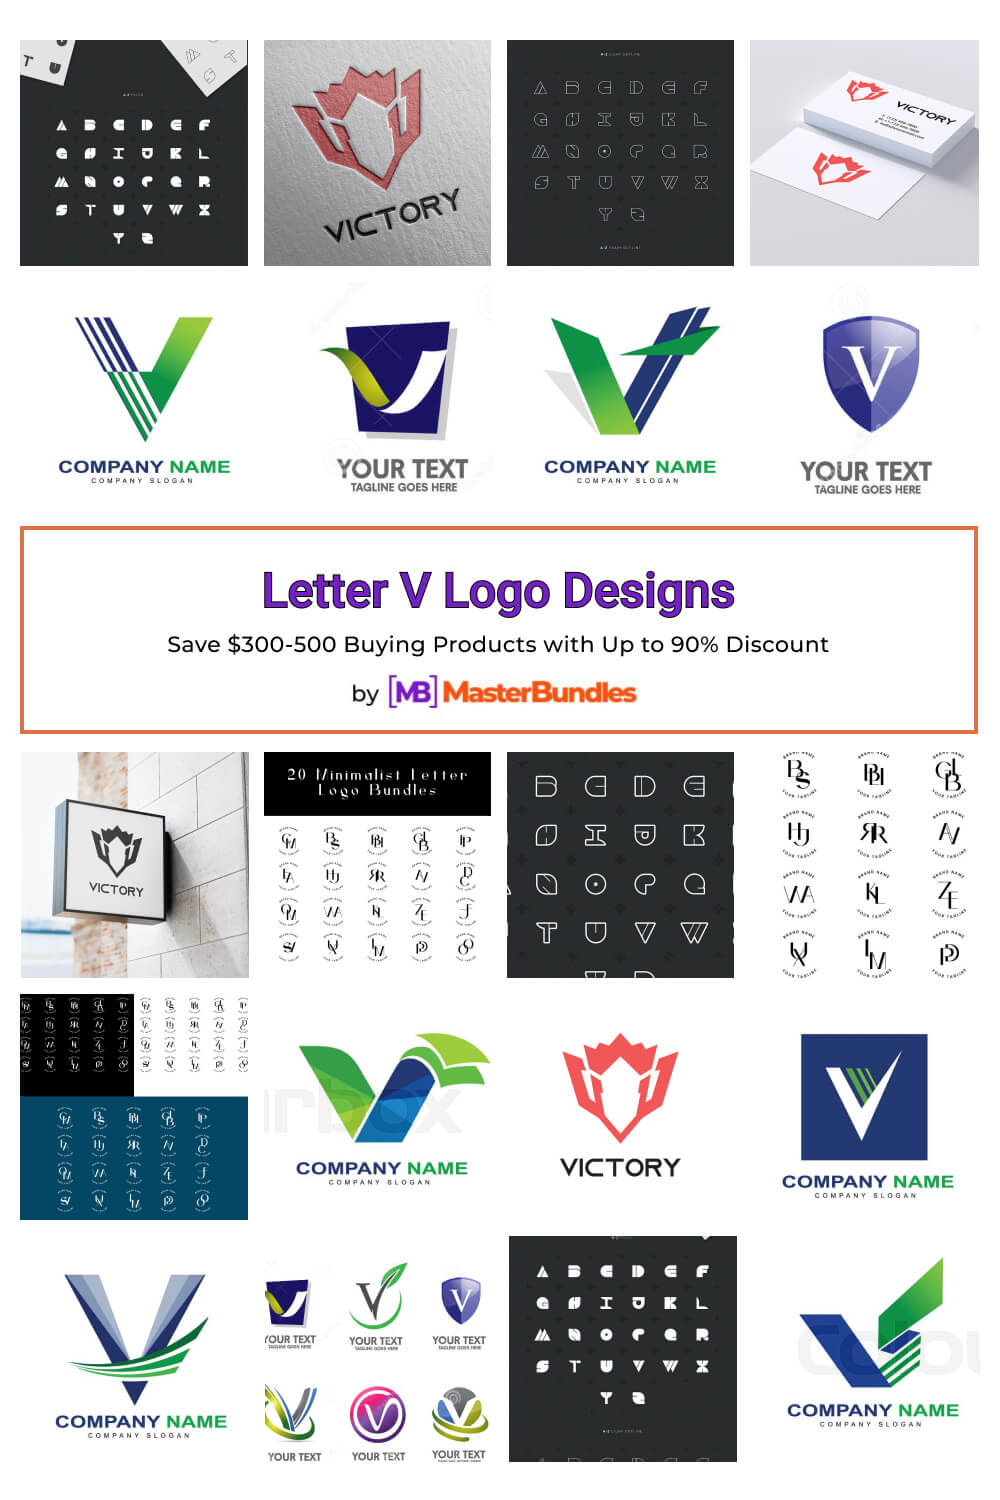 letter v logo designs pinterest image.